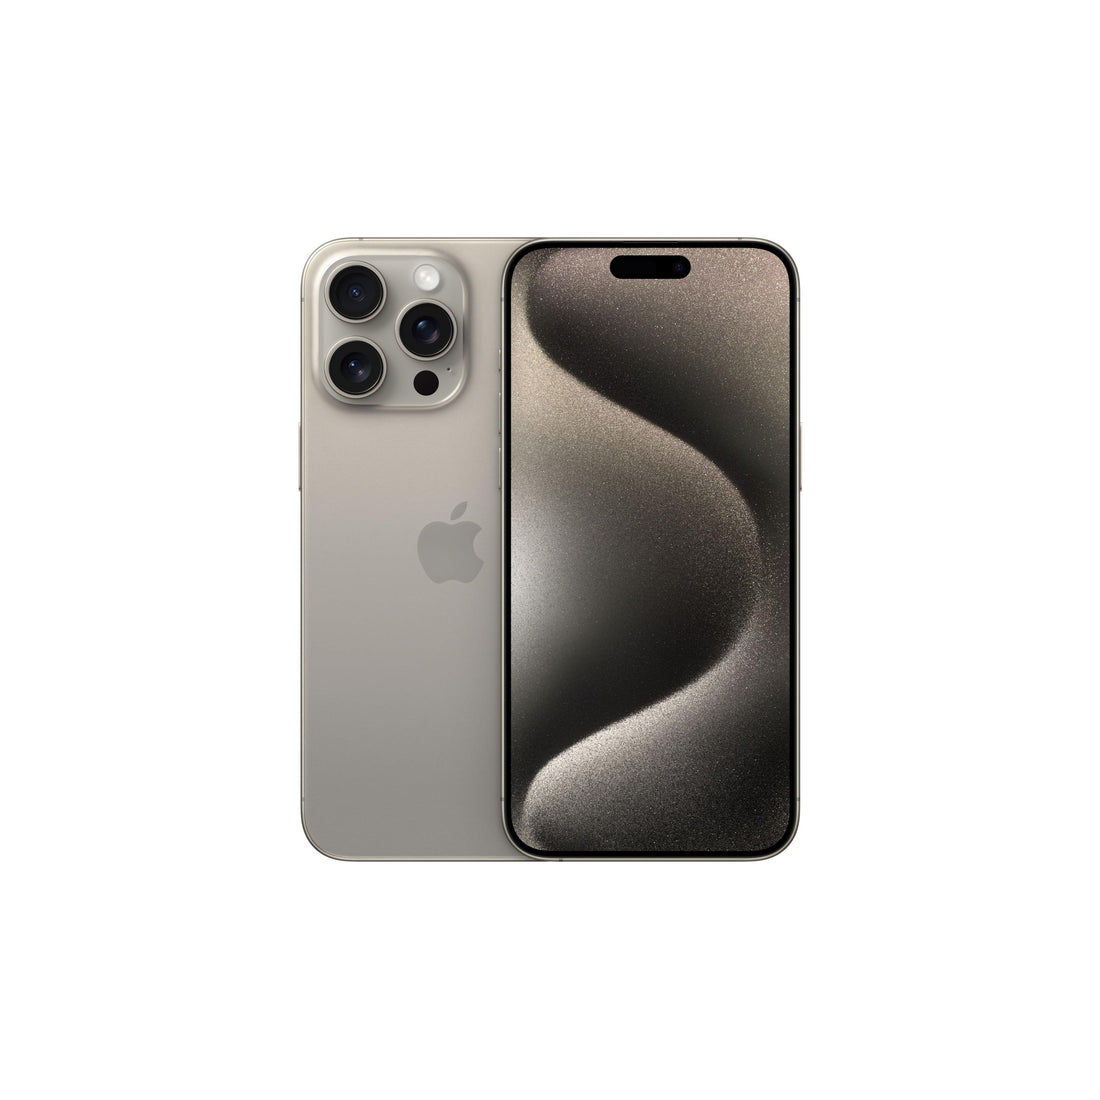 Apple iPhone 15 Pro Max (1 TB) - Titanio naturale-iStoreMilano